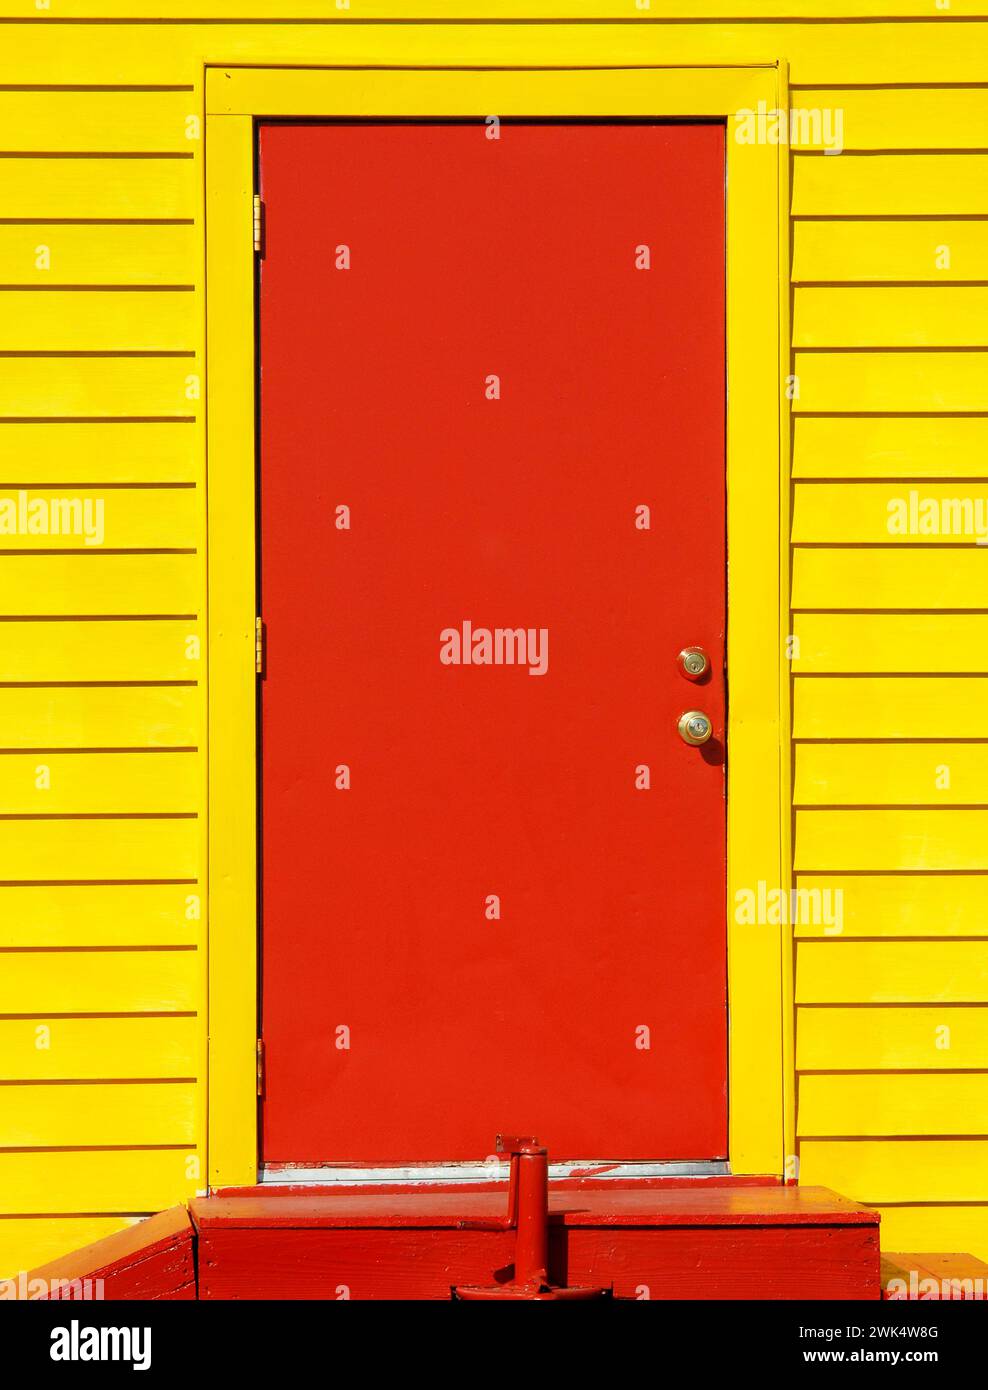 La imagen de fondo muestra una puerta de madera roja en un edificio amarillo brillante. Escaleras rojas conducen a la entrada. Foto de stock